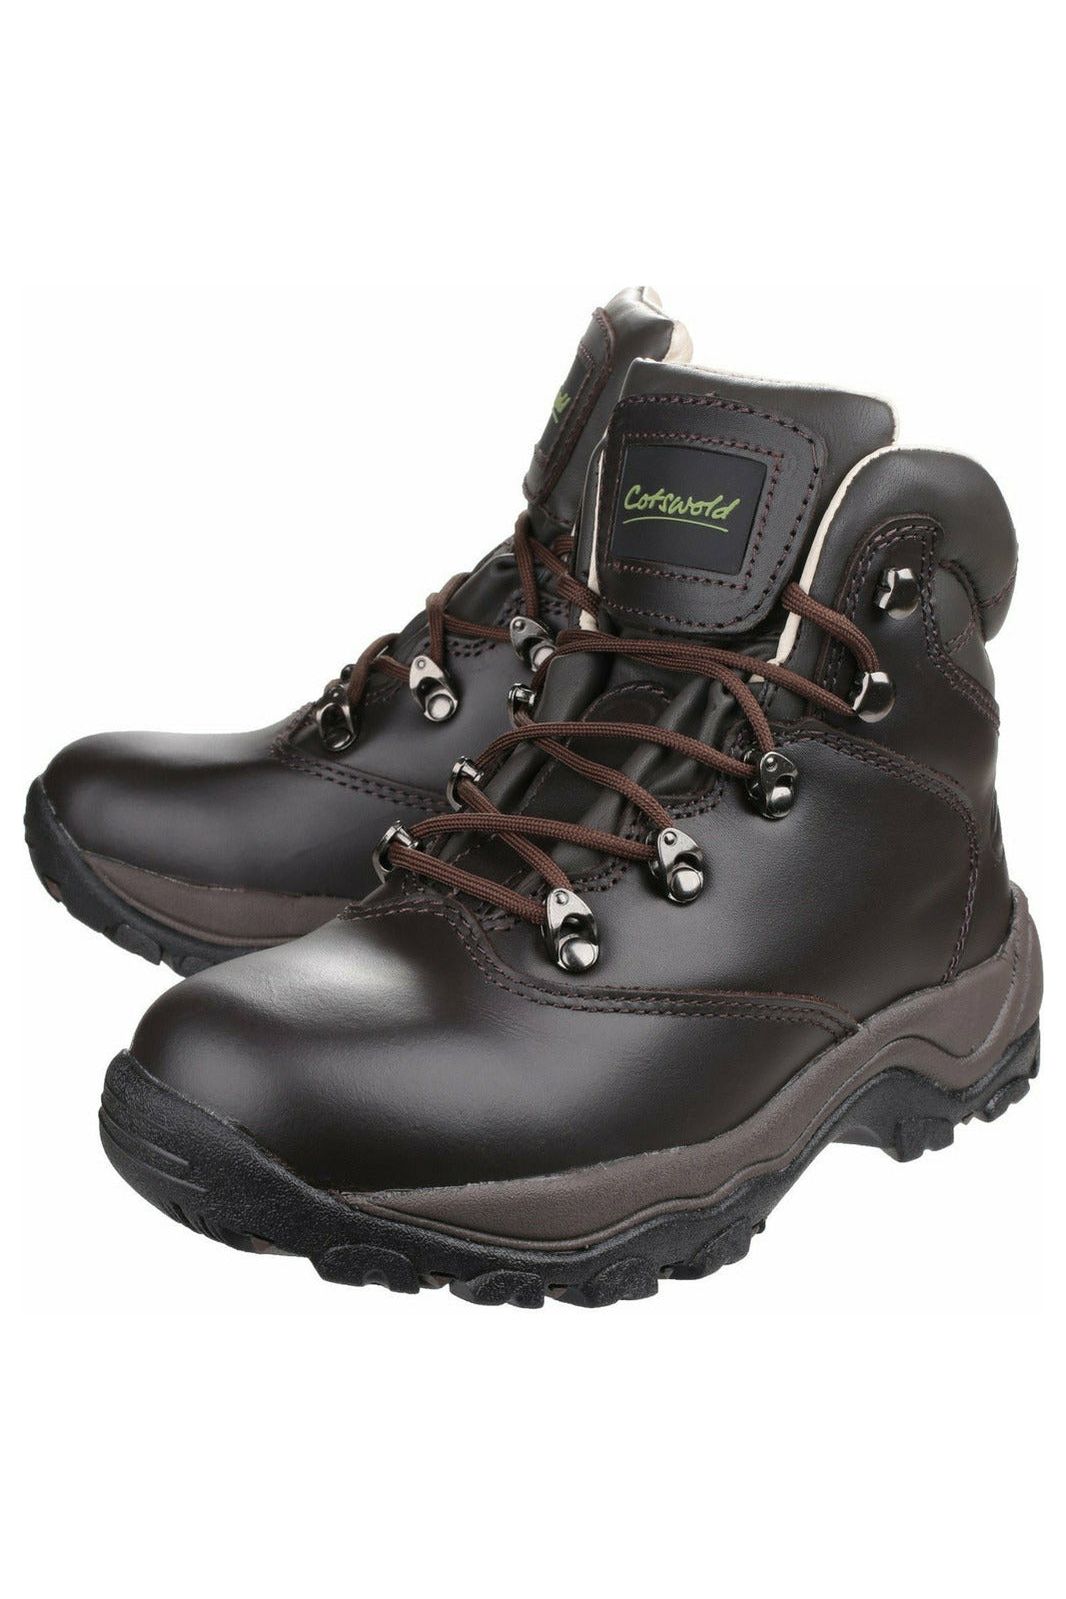 Cotswold - Winstone ladies waterproof Hiking Boot